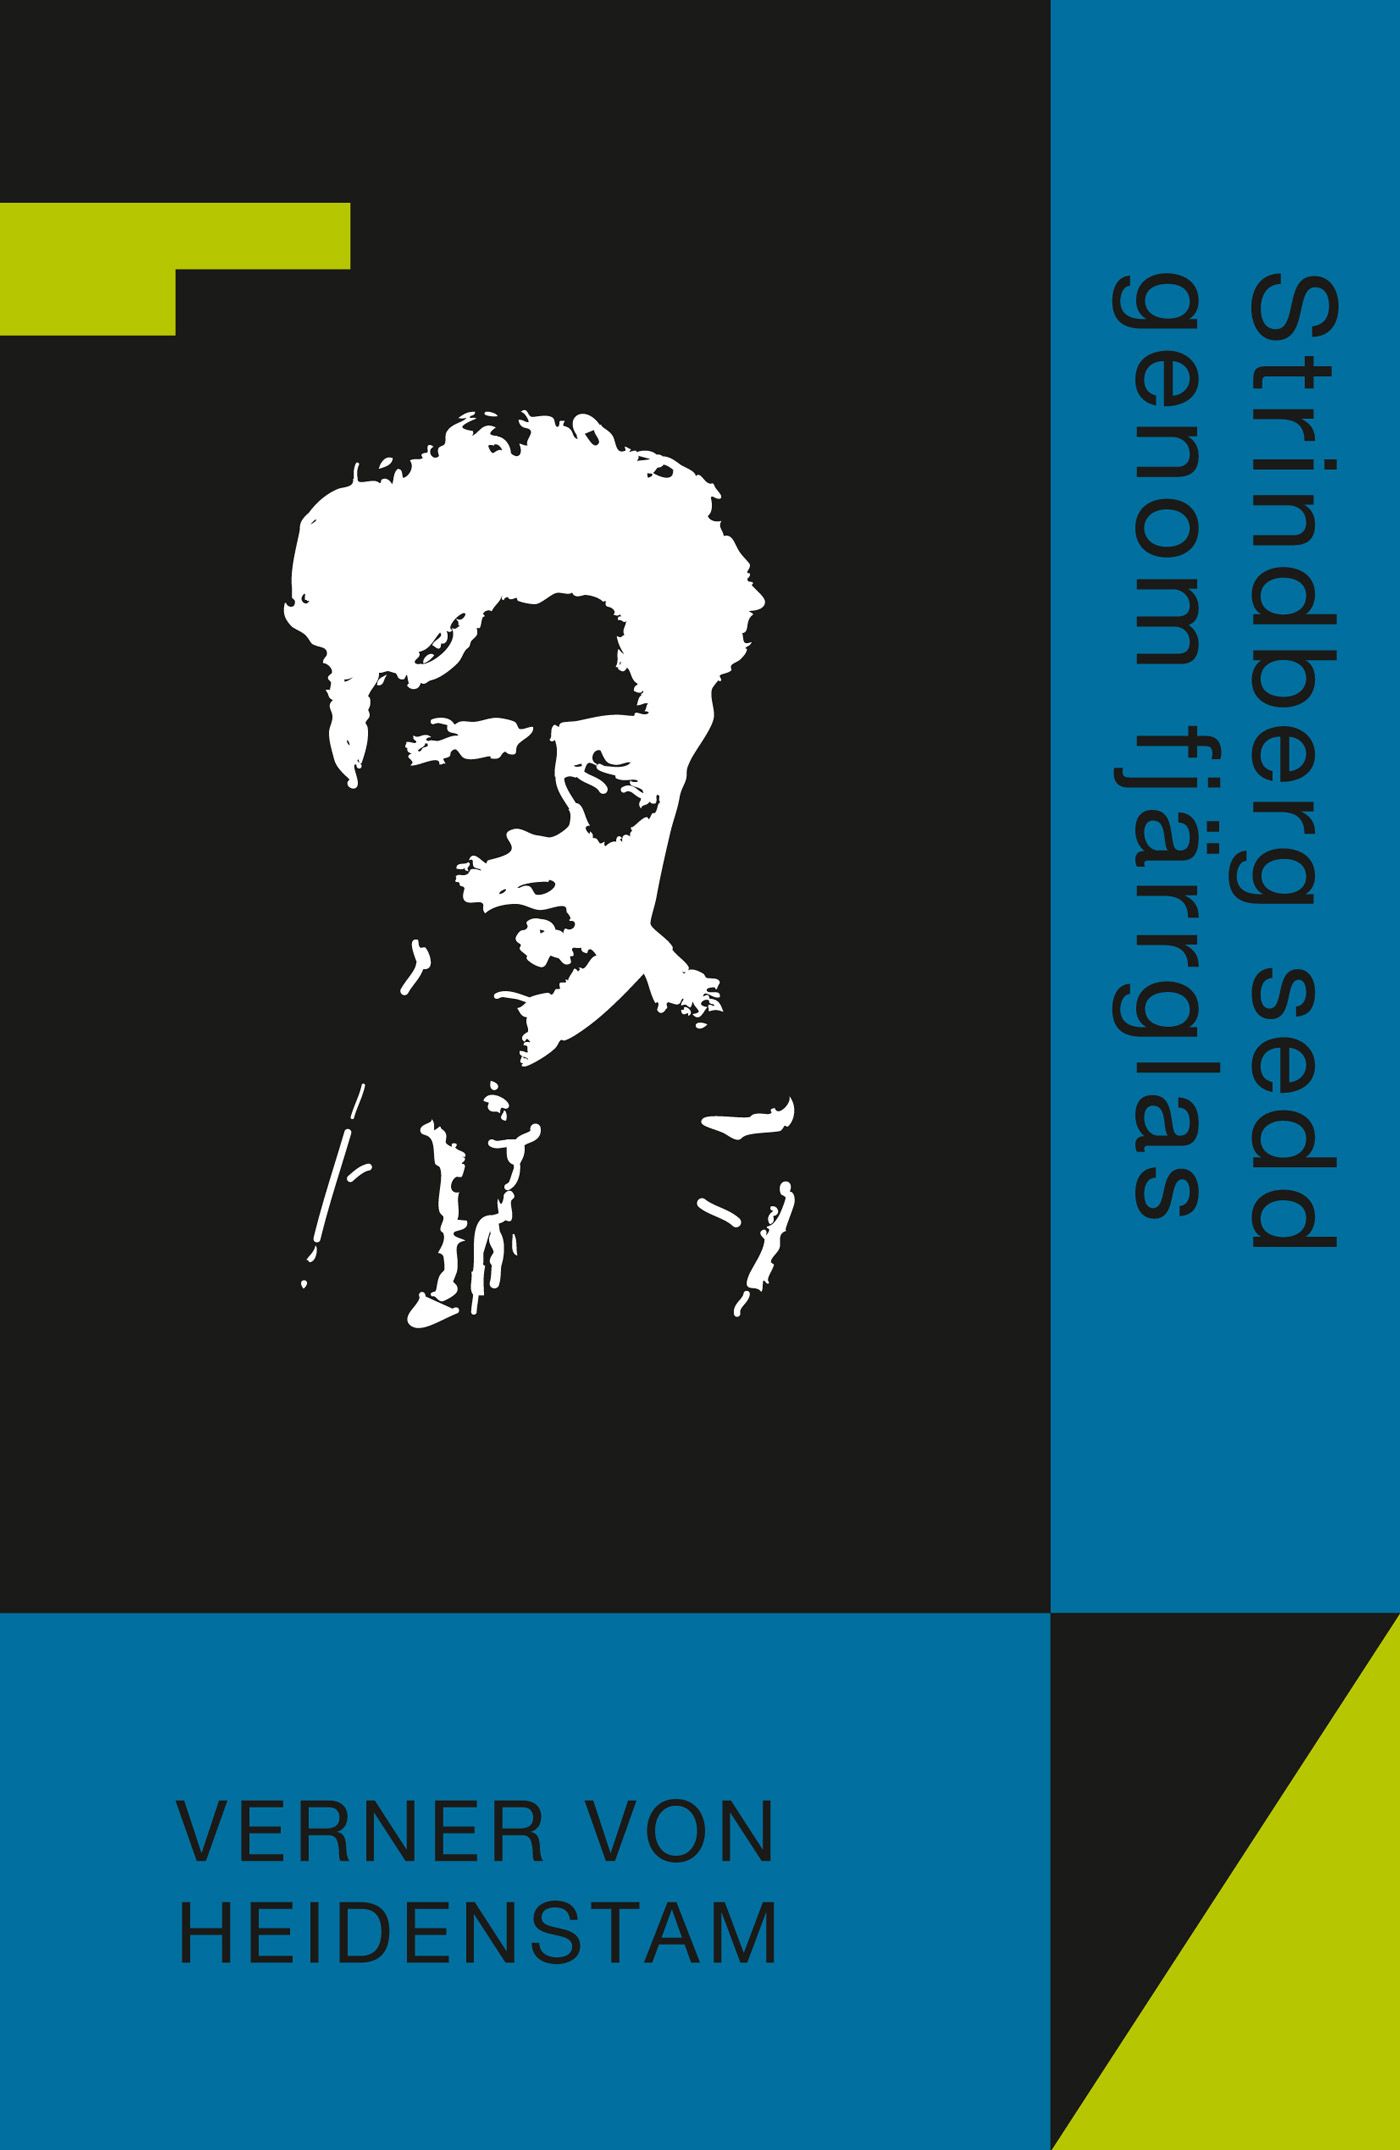 Strindberg sedd genom fjärrglas, e-bok av Verner von Heidenstam